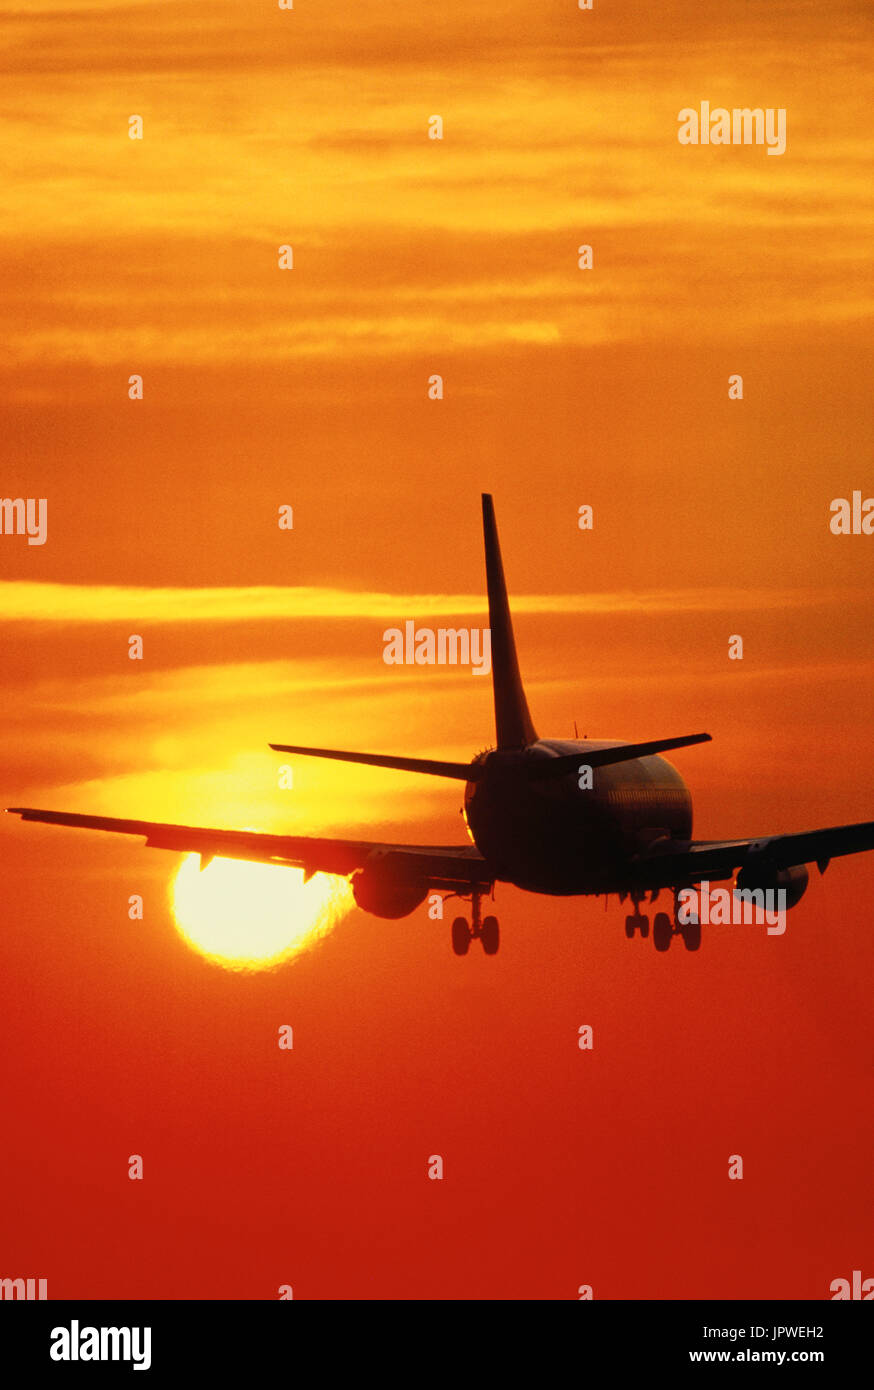 Sur Boeing 737-200 approche finale au coucher du soleil Banque D'Images